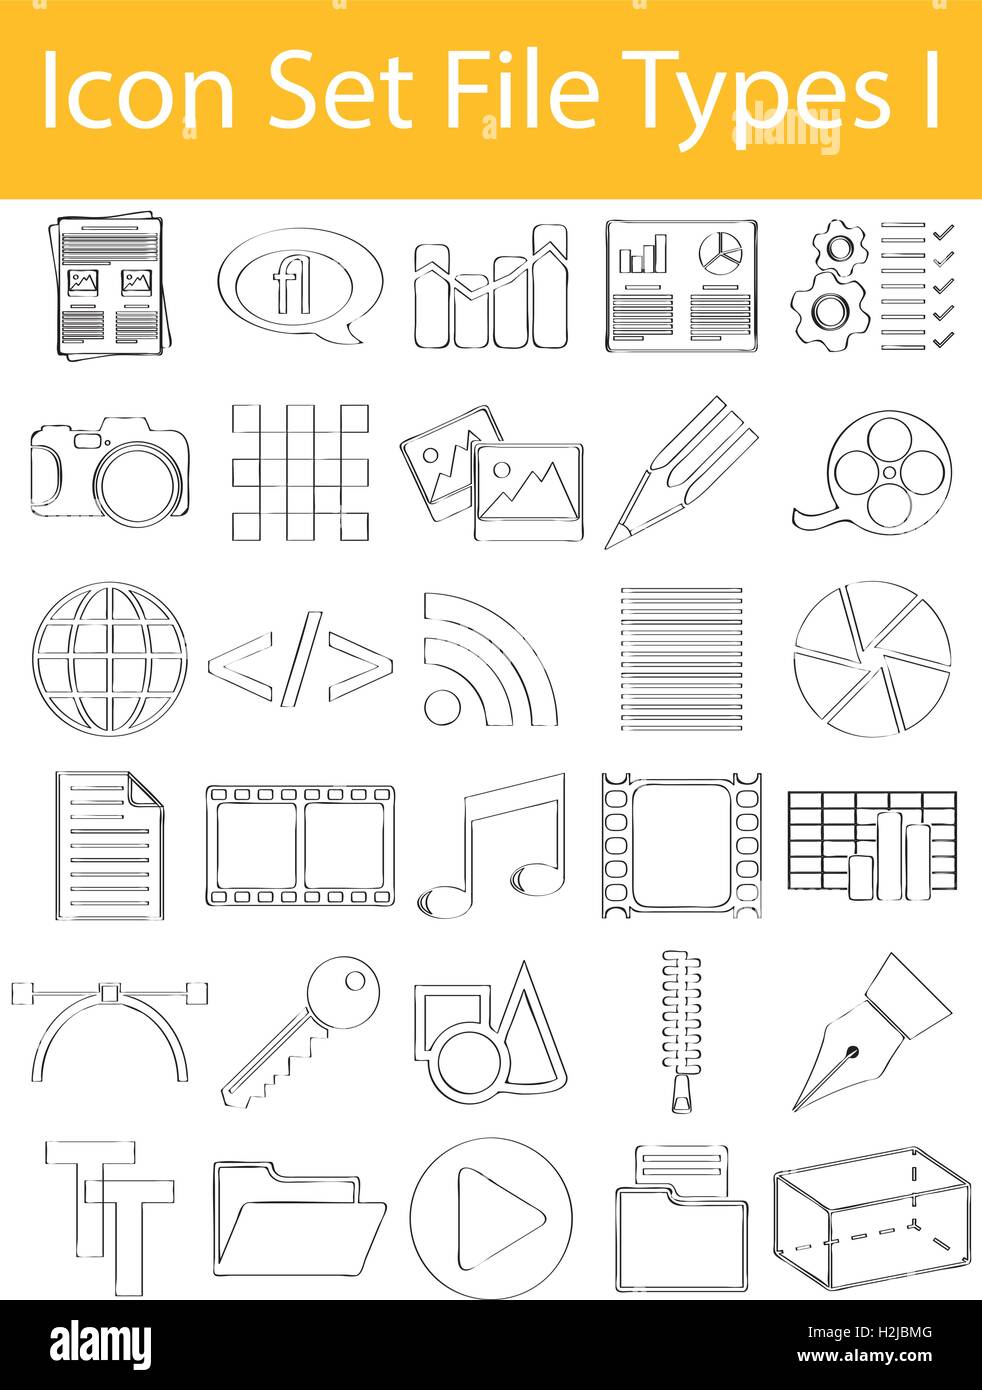 Dibuja el Doodle icono forrado establecer tipos de archivo I con 30 iconos para el uso creativo de diseño gráfico Ilustración del Vector